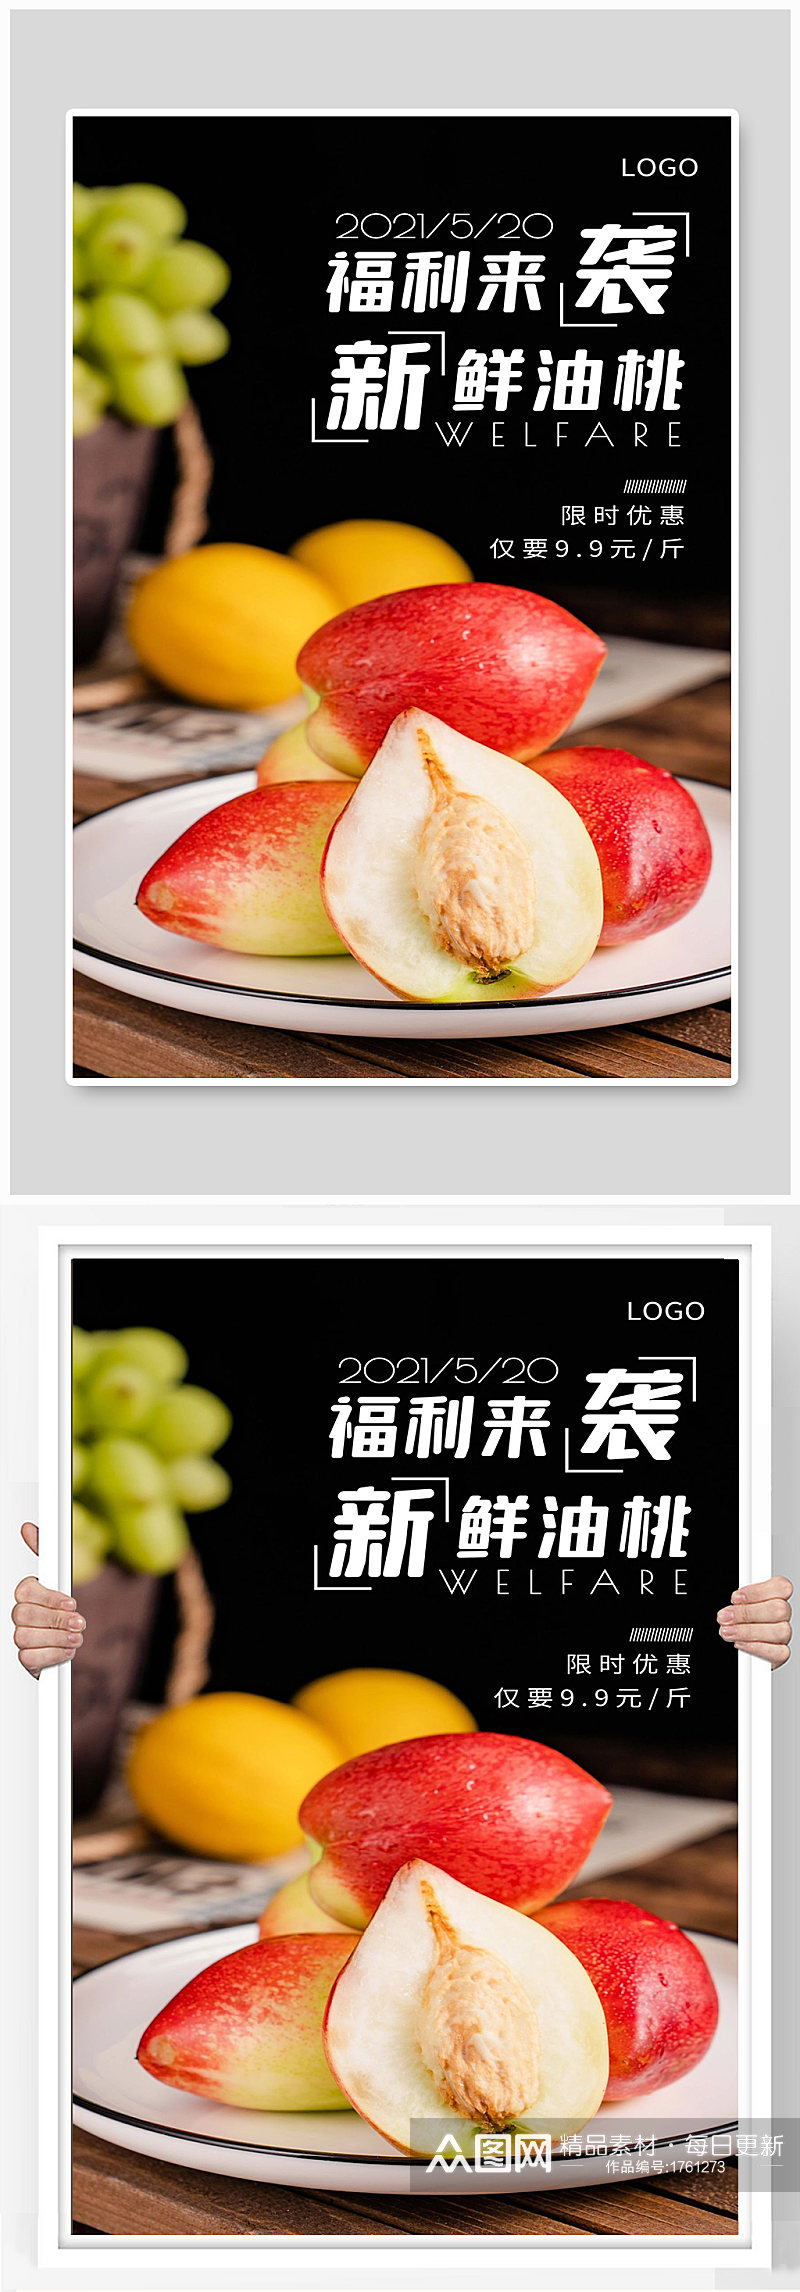 新鲜水果宣传海报设计素材